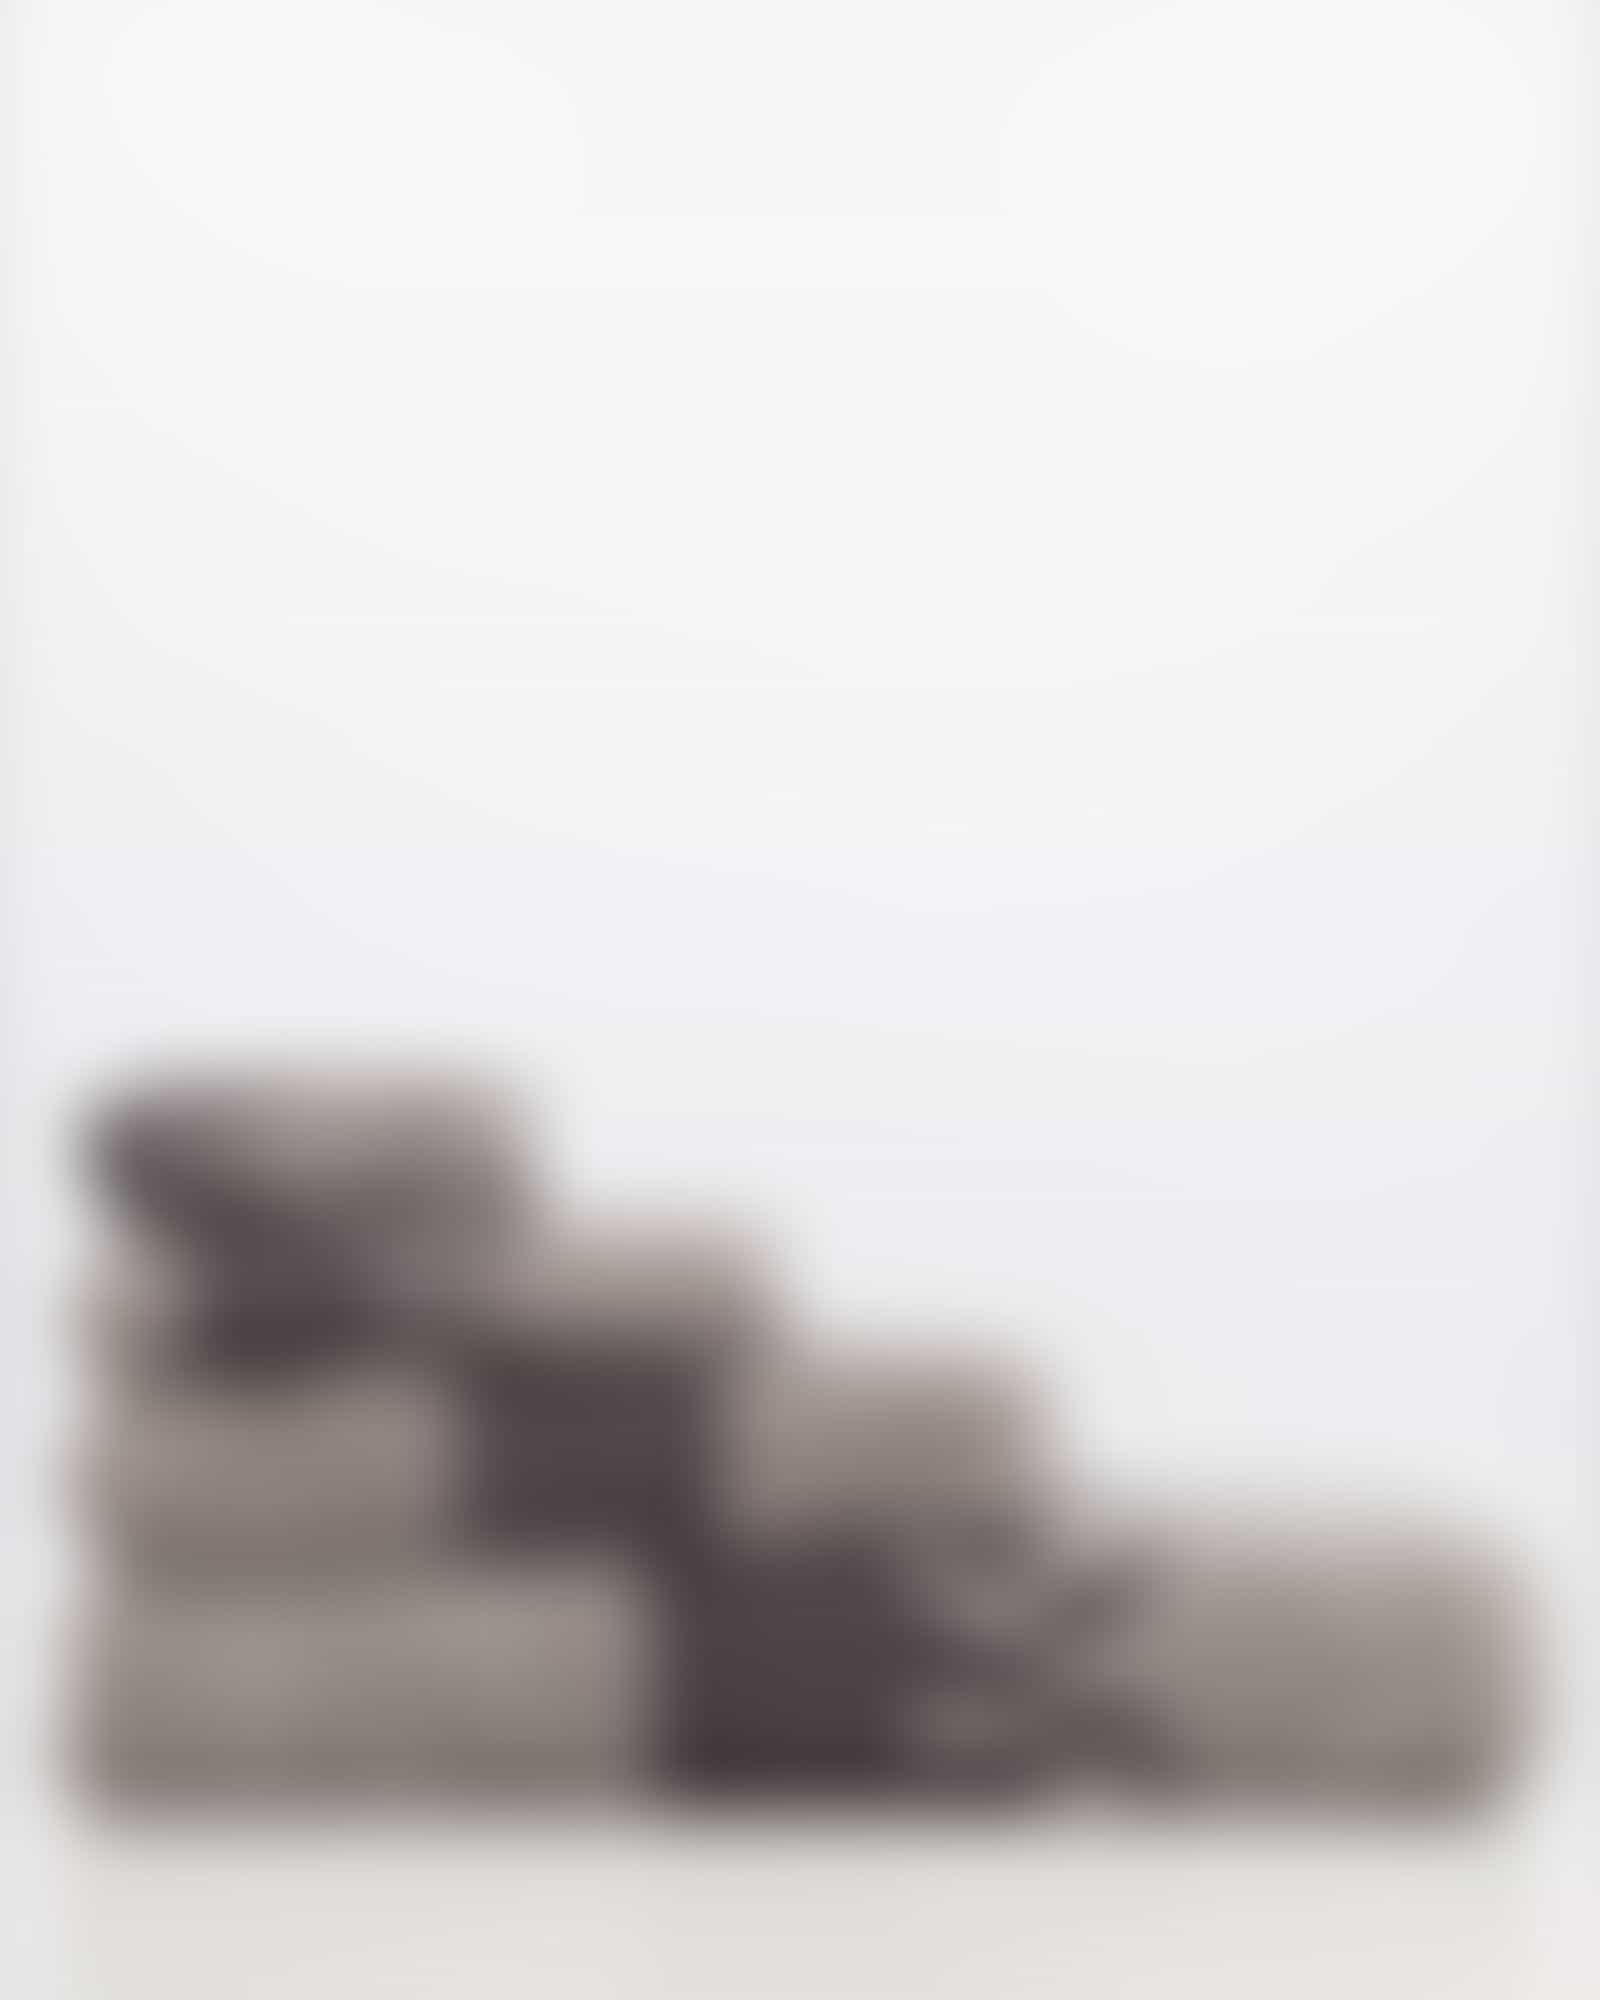 JOOP Shades Stripe 1687 - Farbe: platin - 77 - Waschhandschuh 16x22 cm Detailbild 3